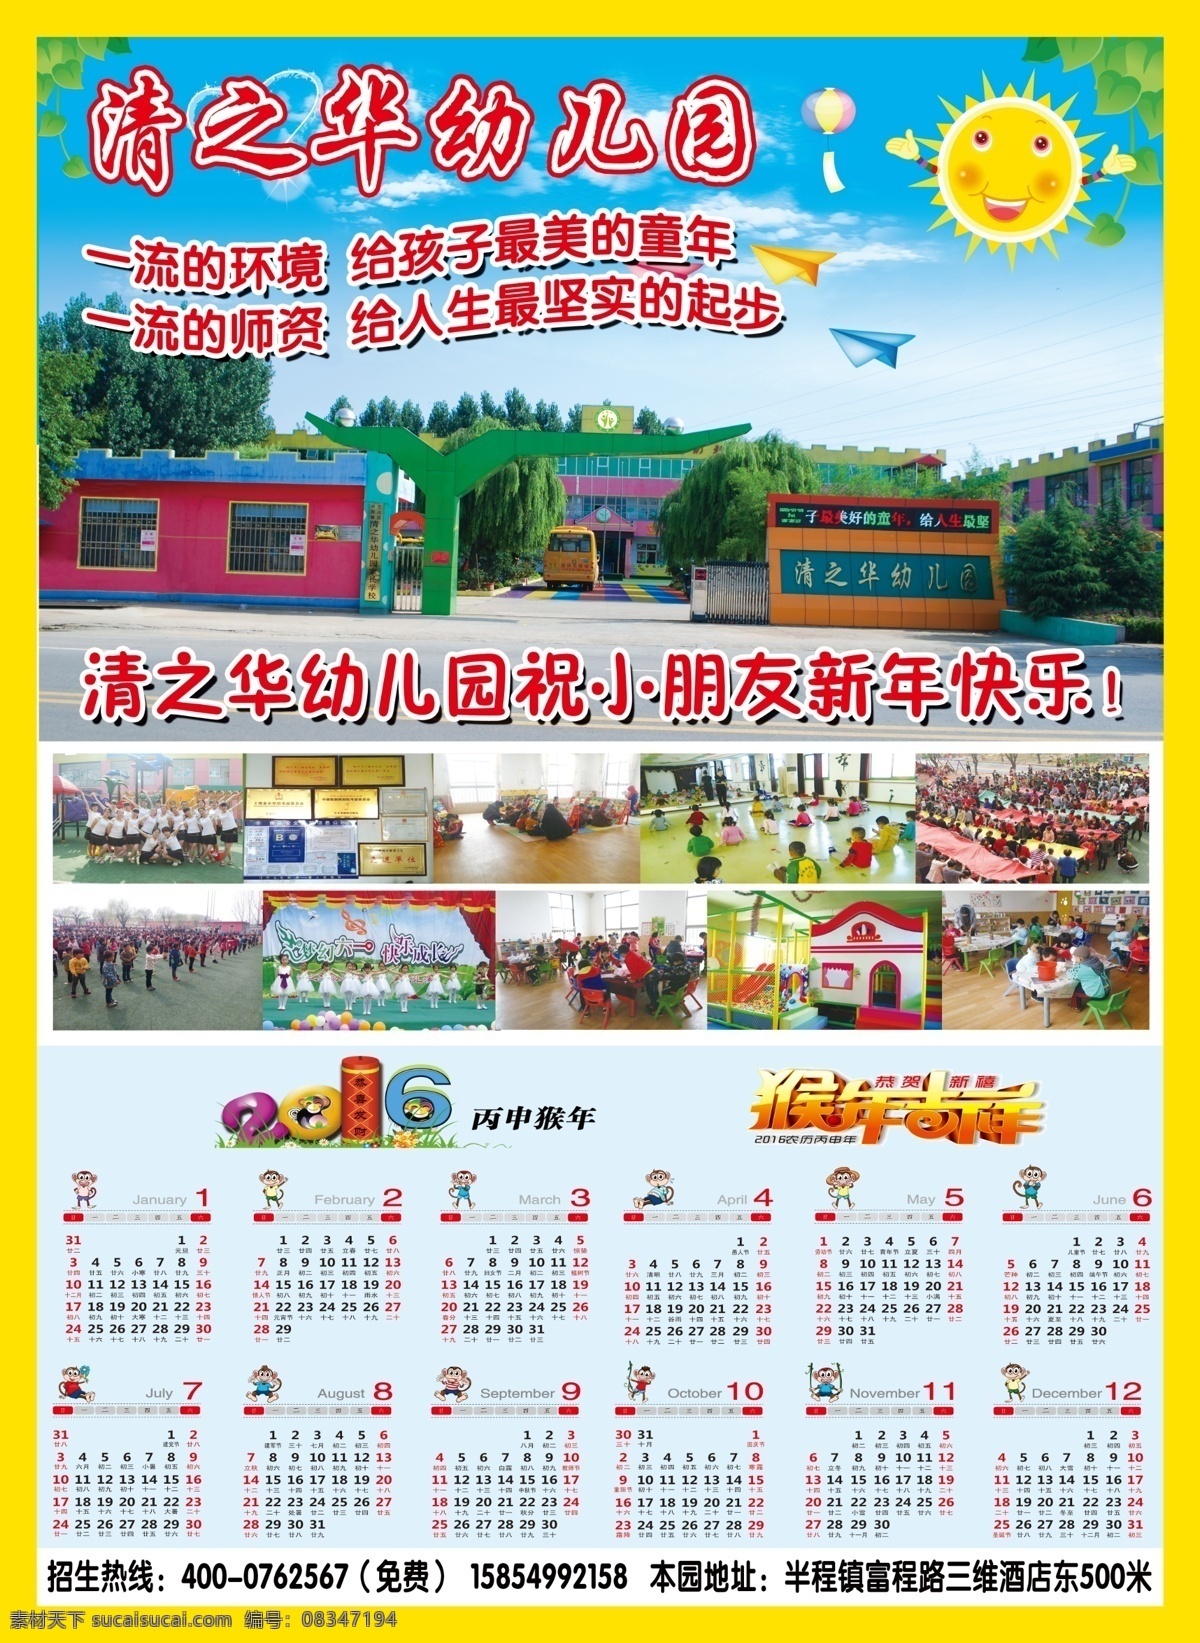 幼儿园年历画 幼儿园 2016 猴年 年历 太阳 树叶 气球 纸飞机 老师 儿童 分层